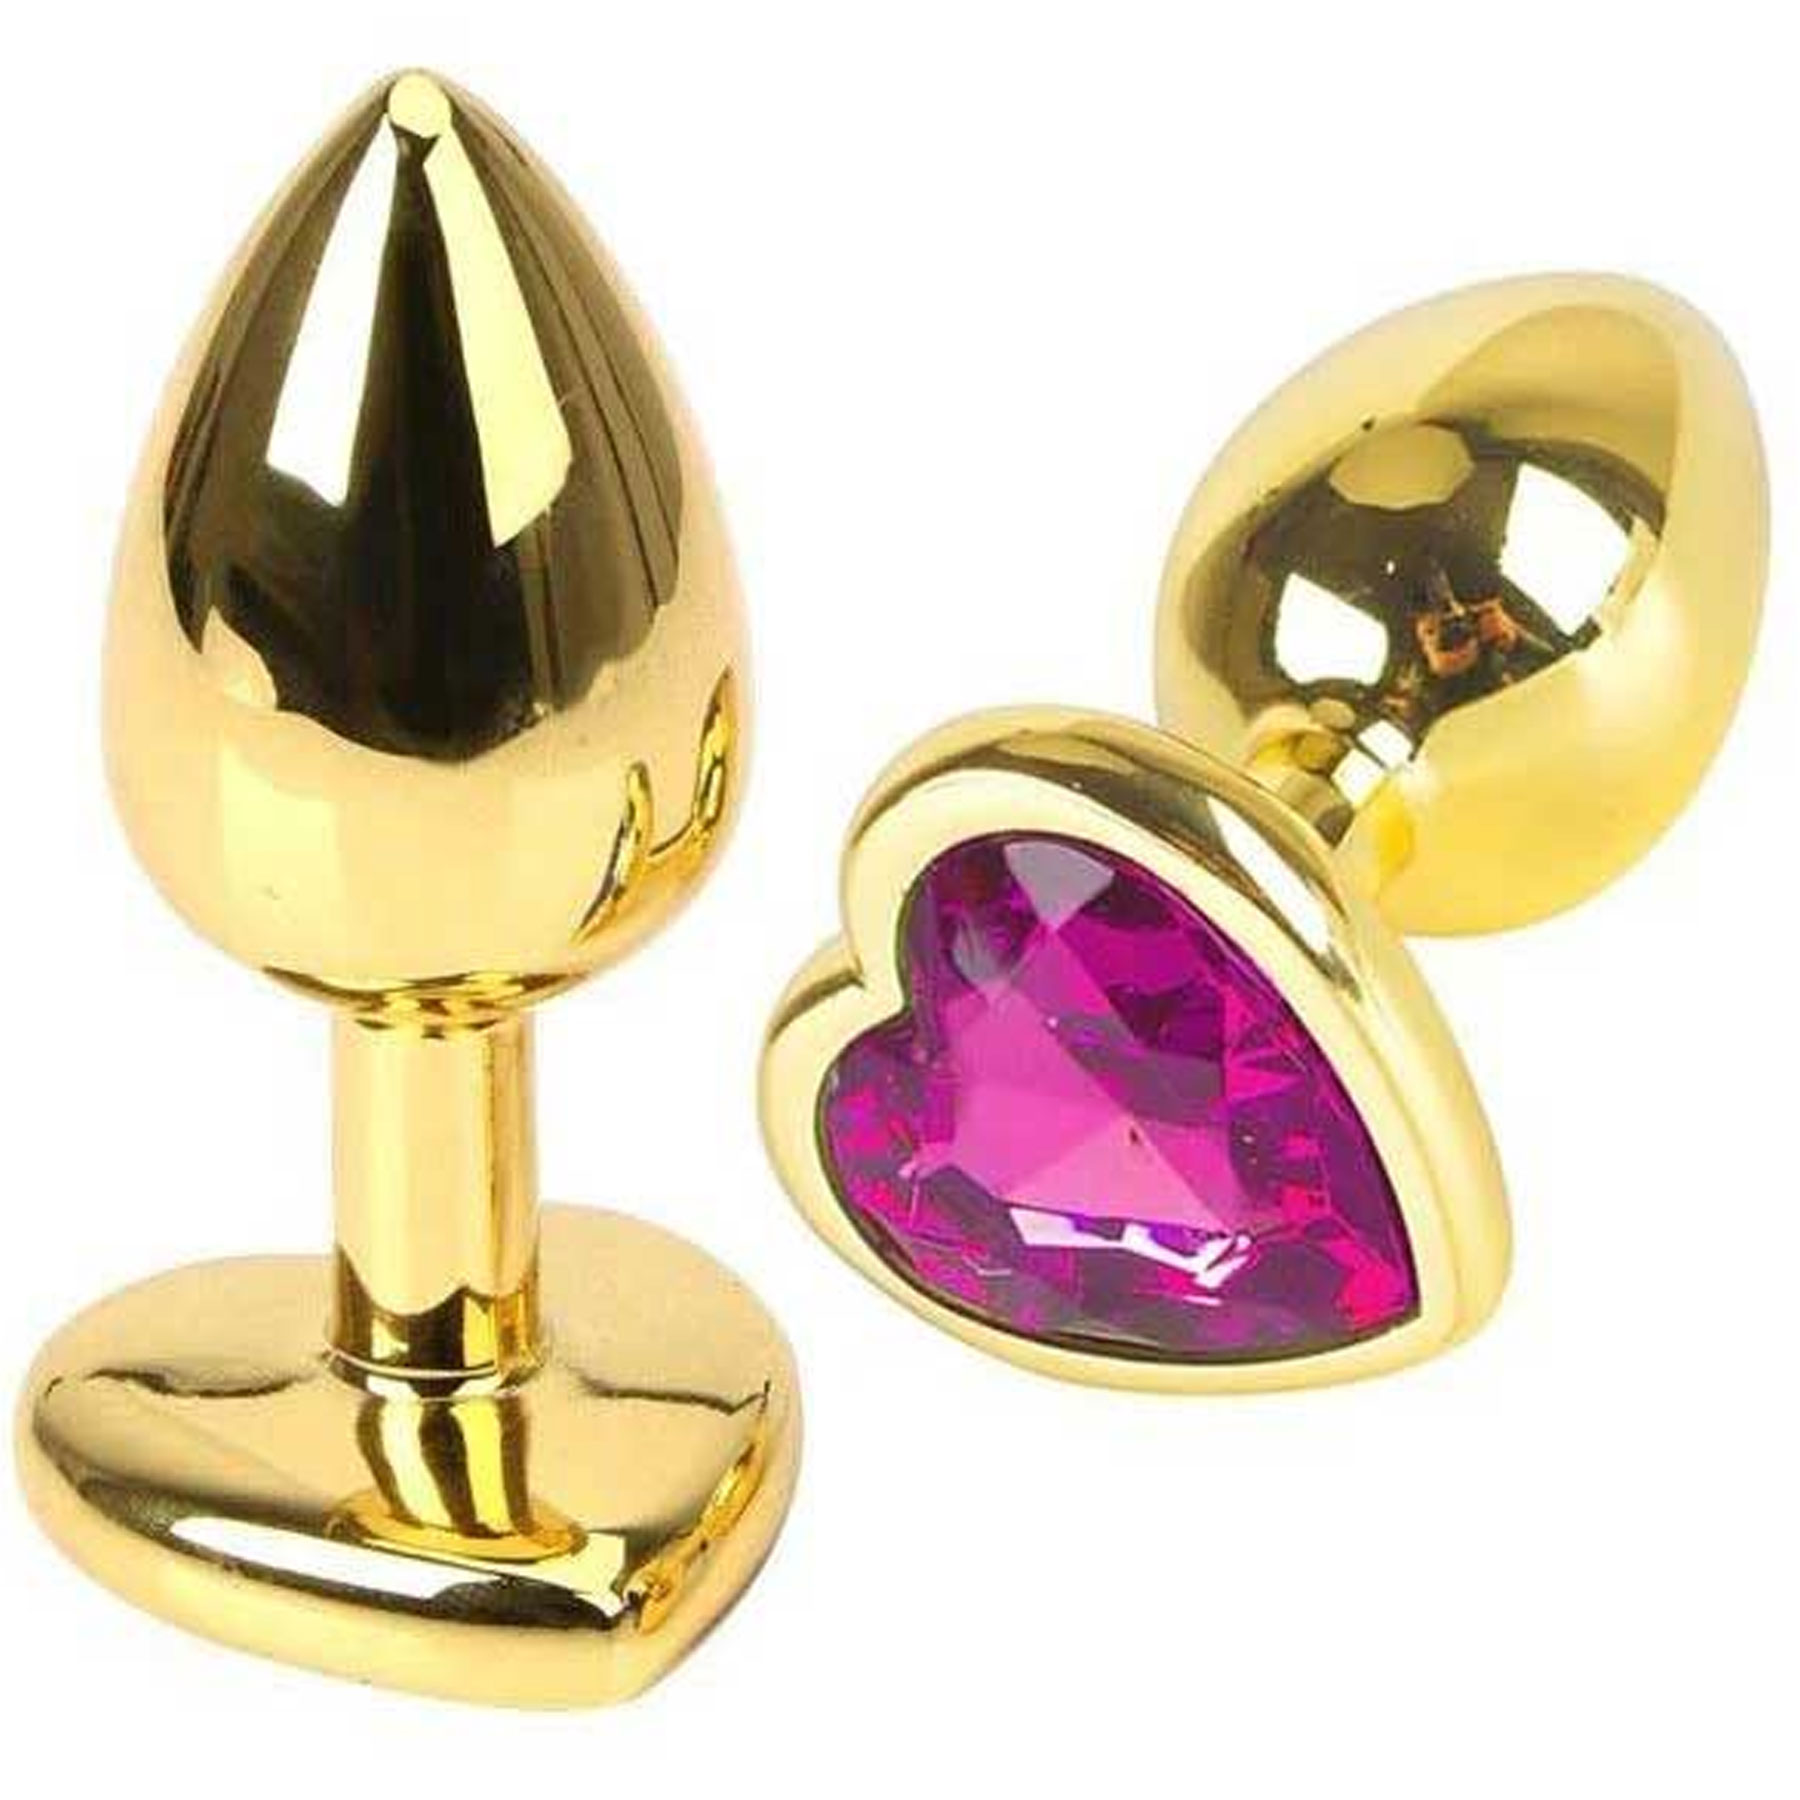 Kalp Mücevherli Altın Rengi Metal Anal Plug - 8 cm x 3.4 cm Orta Boy C-401010